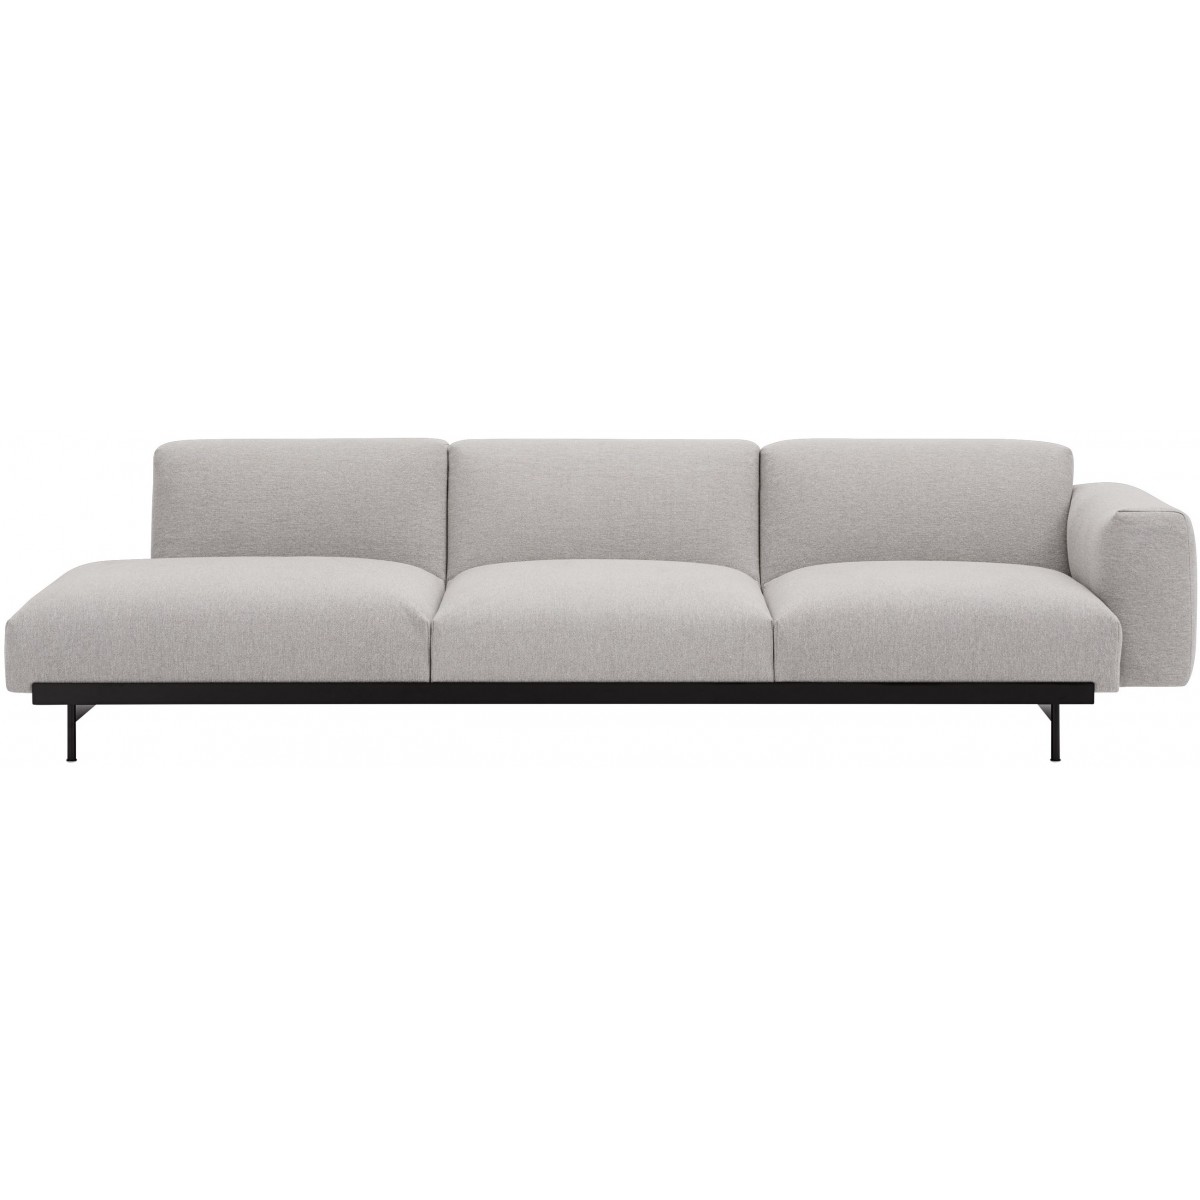 Clay 12 / black – In Situ 3-seater sofa / configuration 2 – 279 x 107 cm